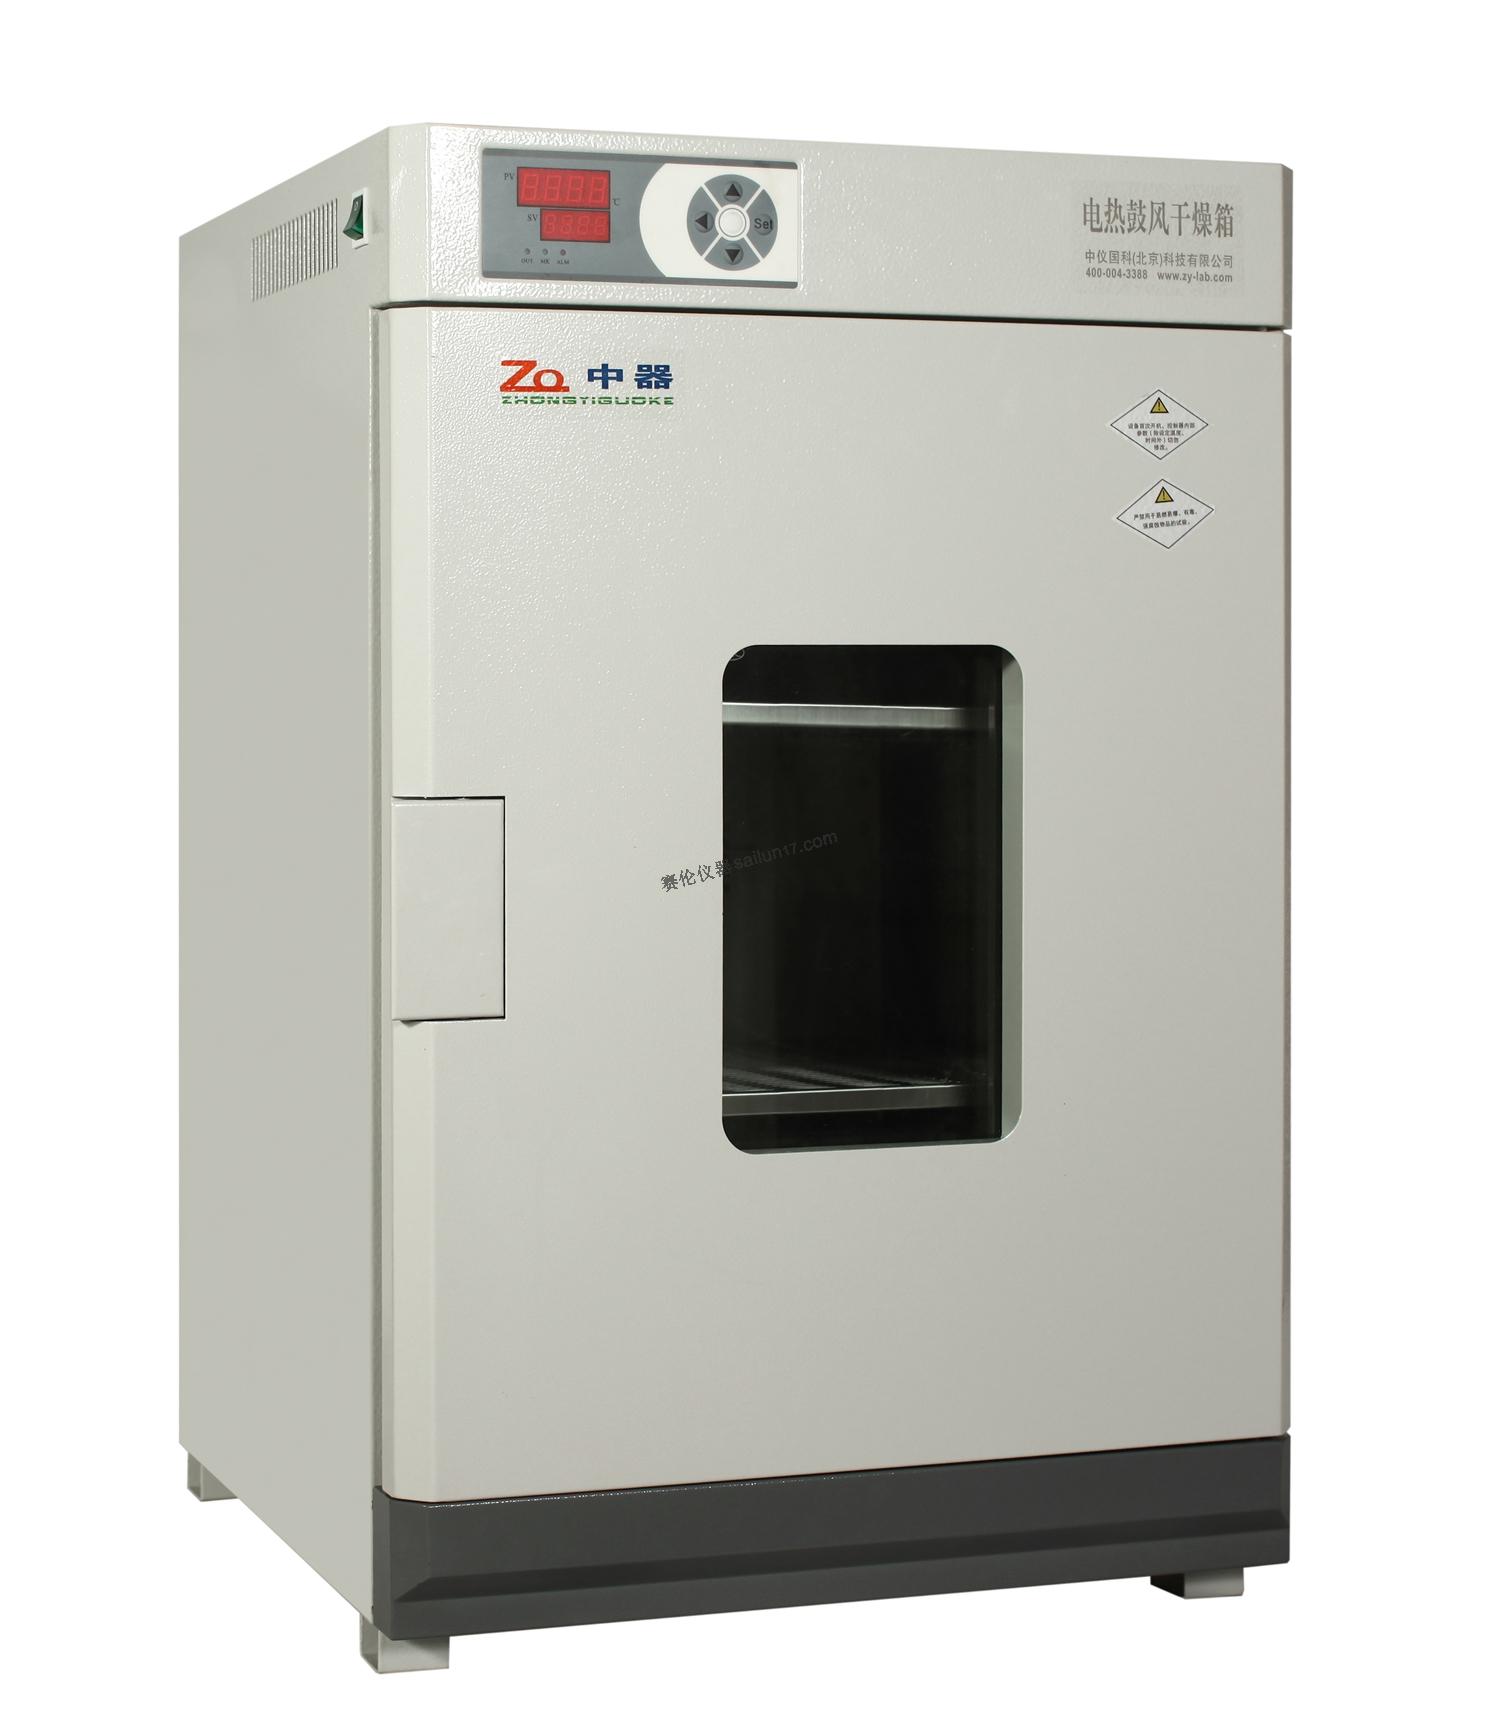 中器DHG-9920A电热鼓风干燥箱(250℃)